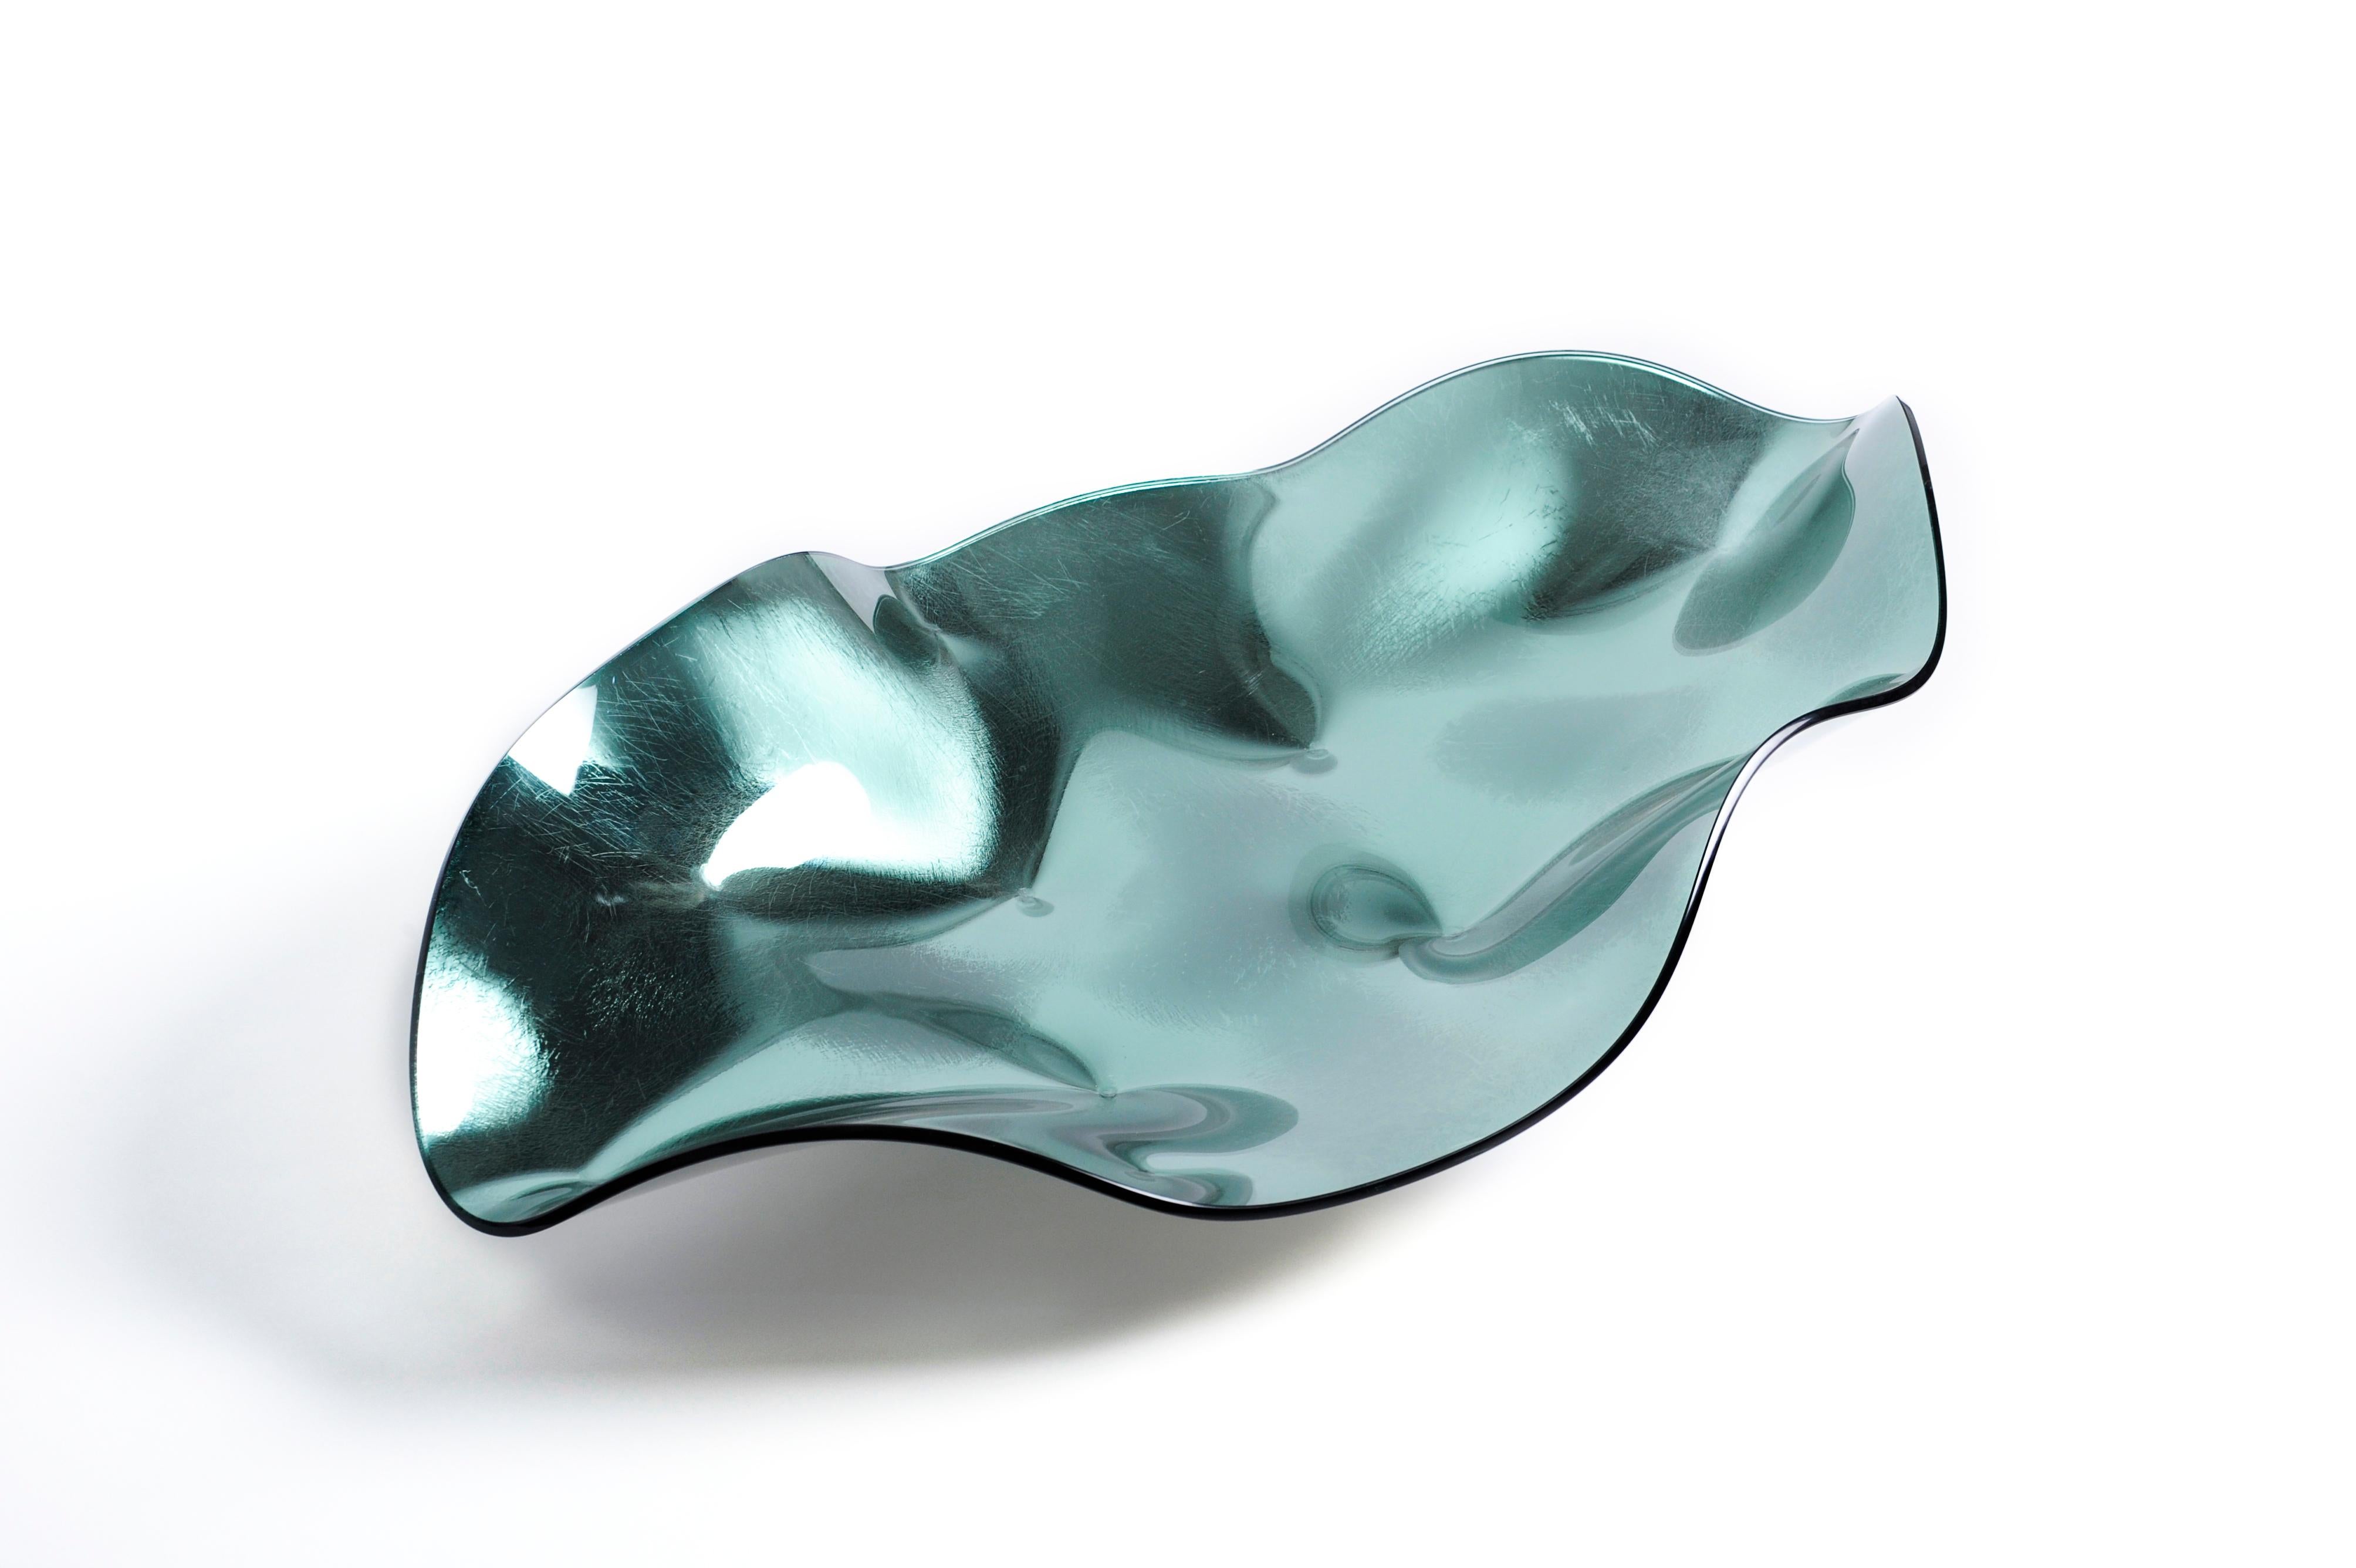 Centre de table ovale créé par Orfeo Quagliata à partir de notre nouvelle collection IZDATGLAZ. Ces pierres précieuses en verre scintillant apportent une touche moderne et simple à tout espace. Qu'il s'agisse d'or, d'argent ou de l'une des couleurs